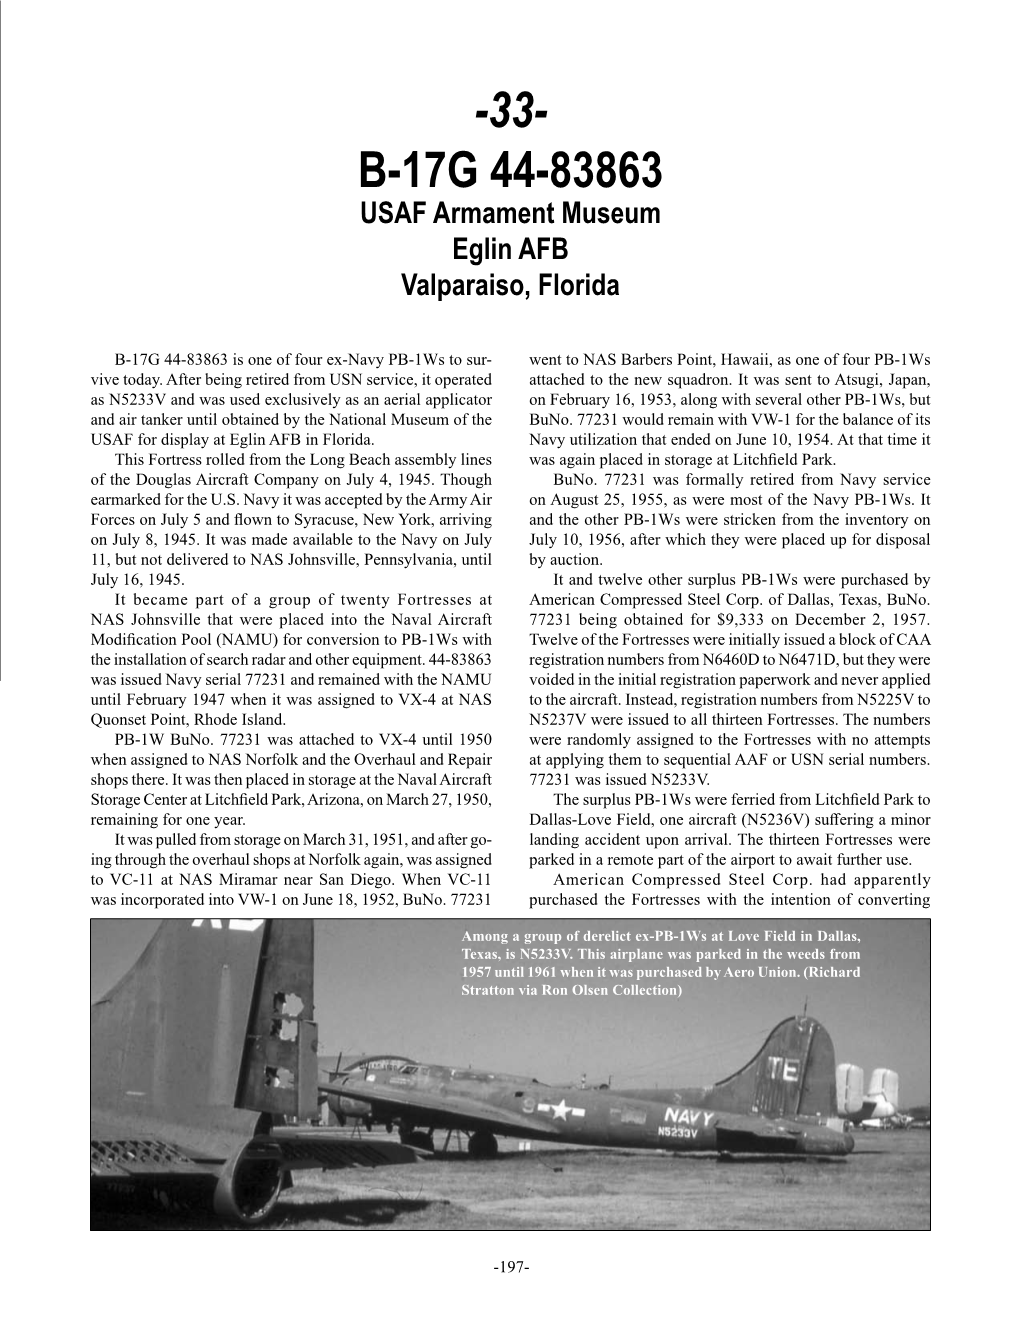 33- B-17G 44-83863 USAF Armament Museum Eglin AFB Valparaiso, Florida